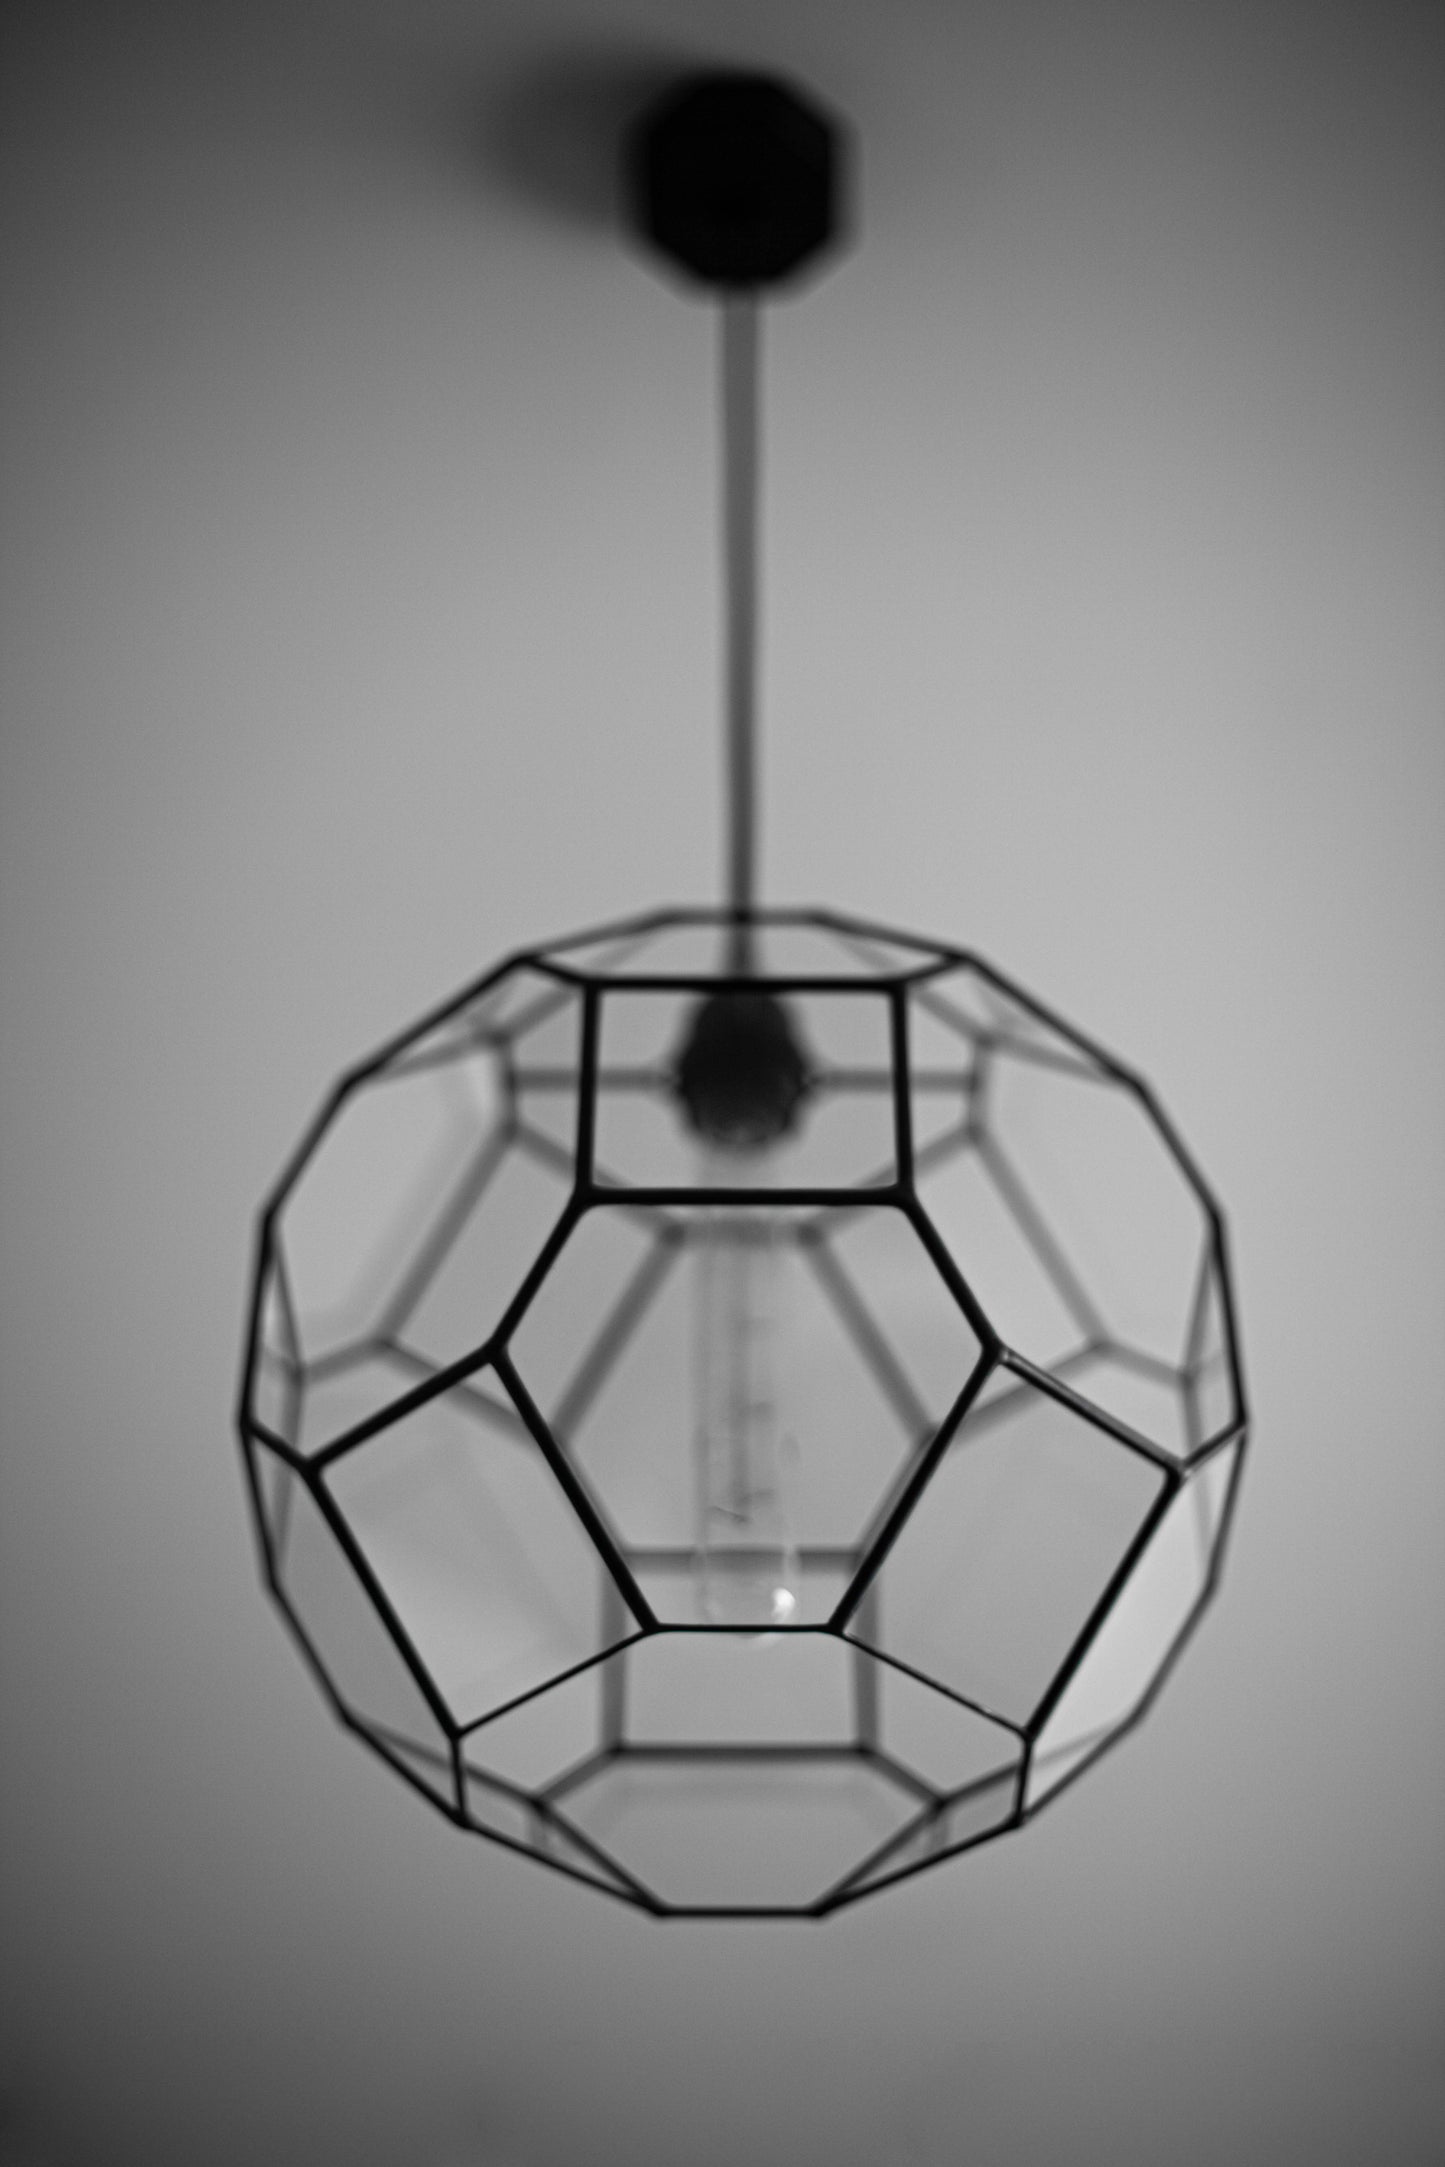 Truncated Cuboctahedron Glass Geometric Chandelier